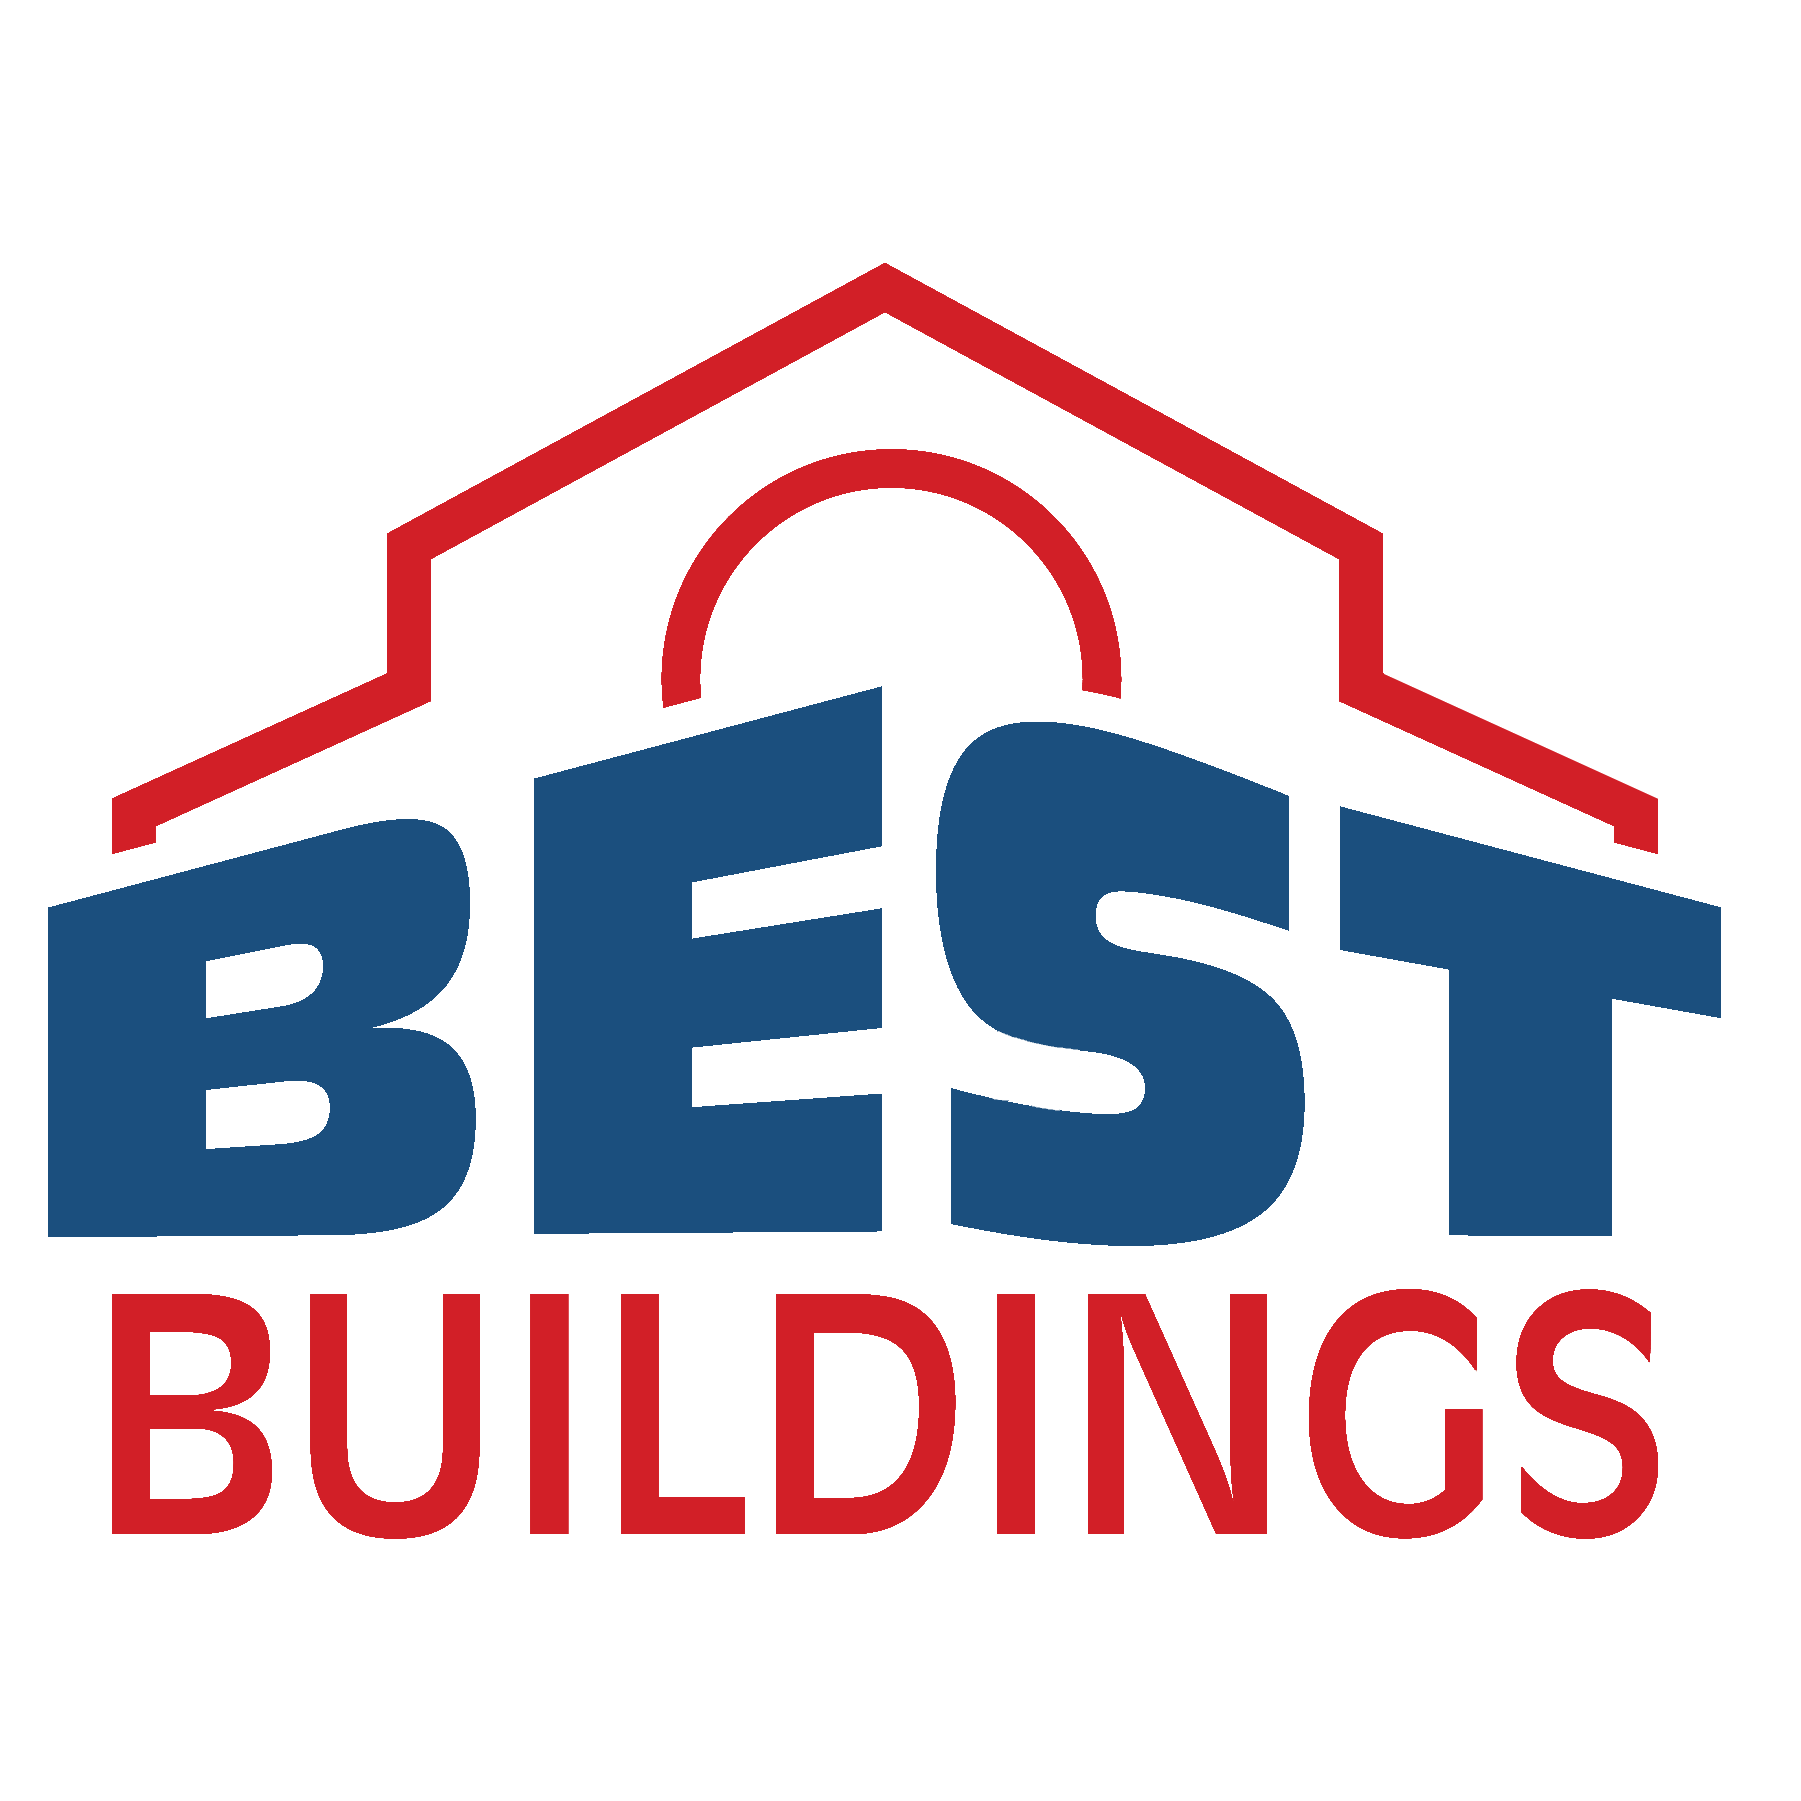 Best Buildings